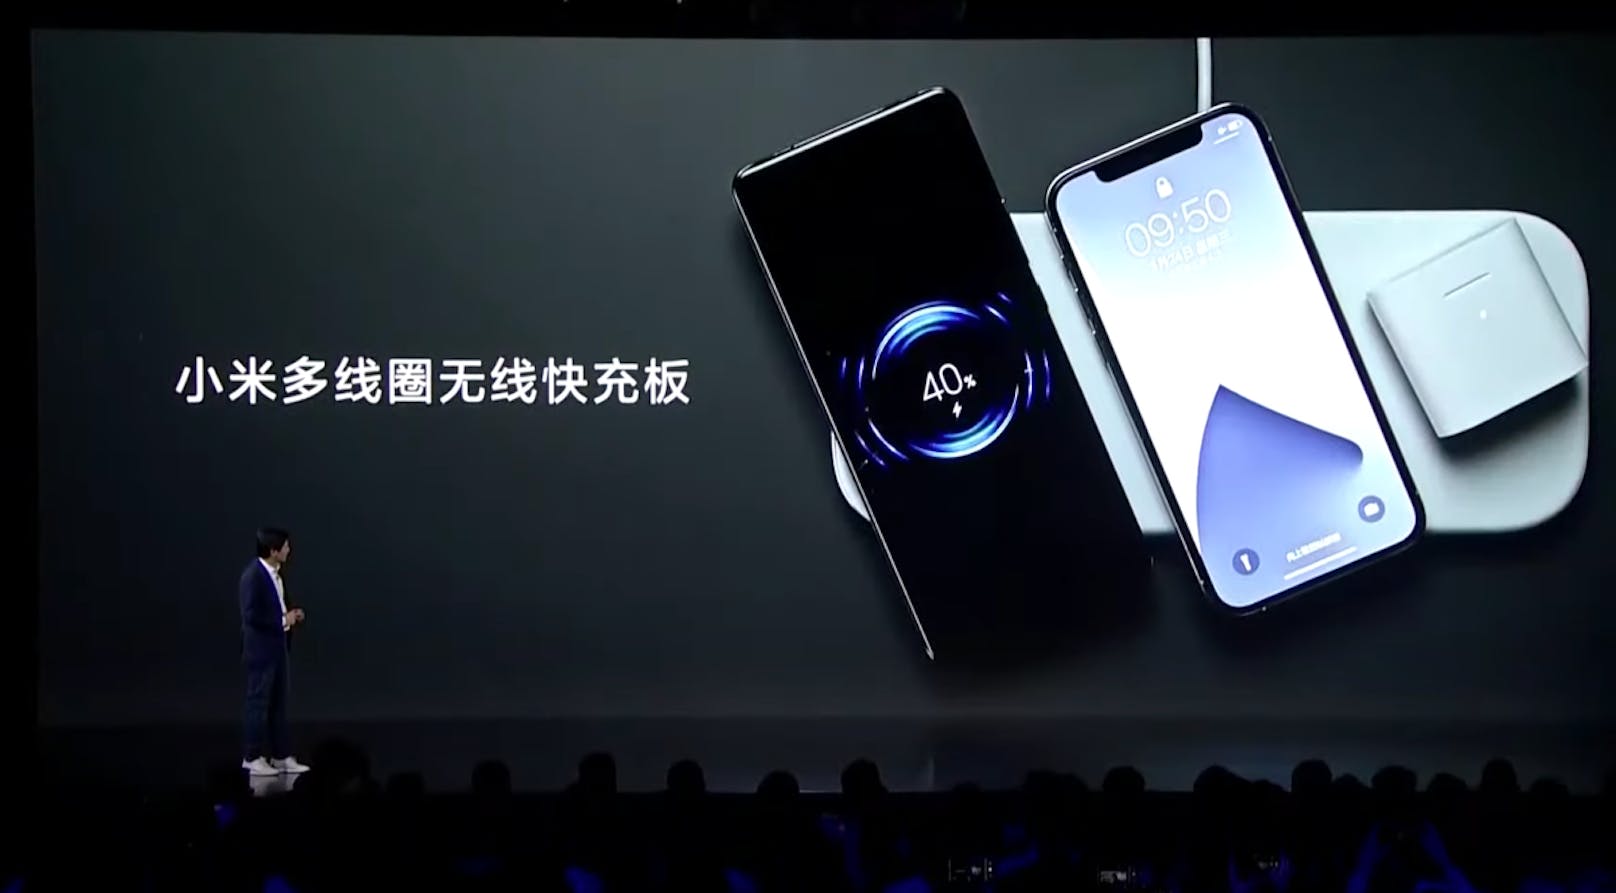 So sieht die Ladematte aus, die Xiaomi vorgestellt hat. Es können drei Geräte gleichzeitig geladen werden.